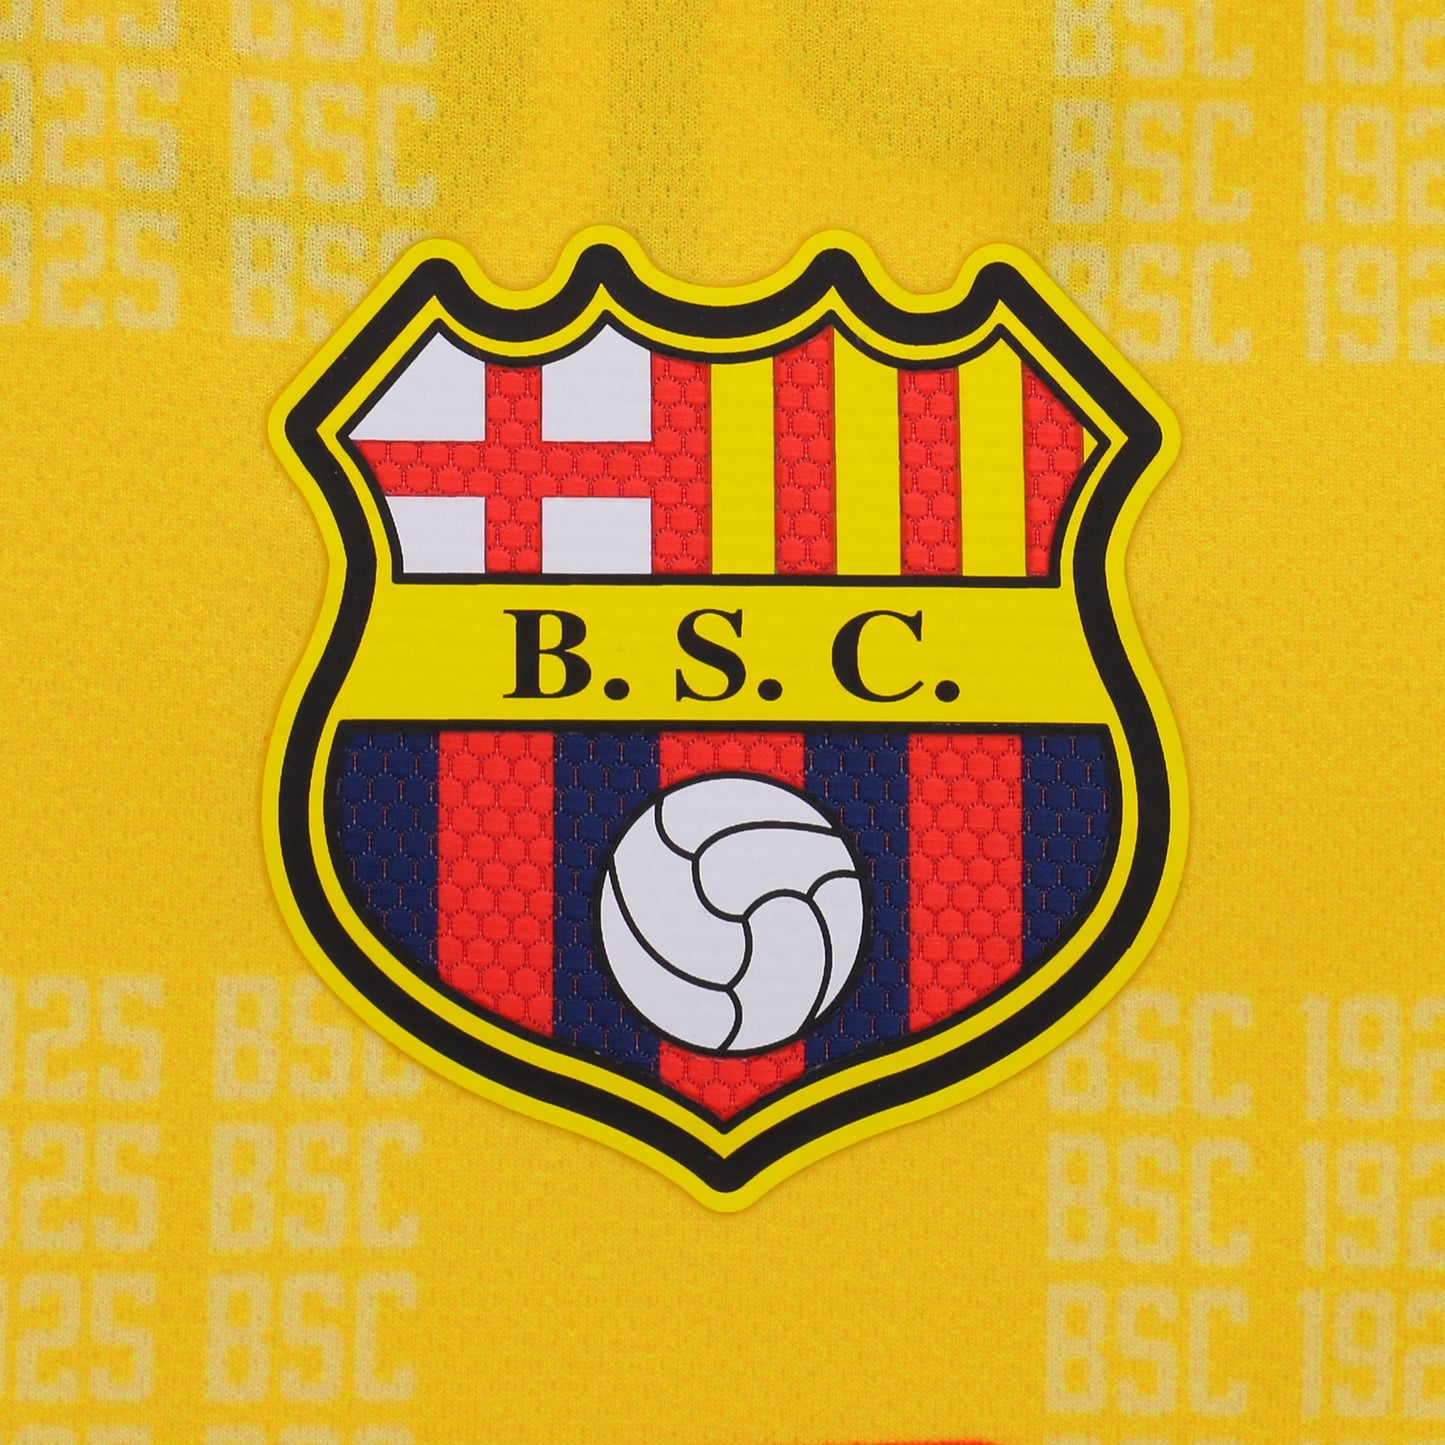 Camiseta Barcelona Sporting Club Ecuador Oficial 2022 Hombre Tevez